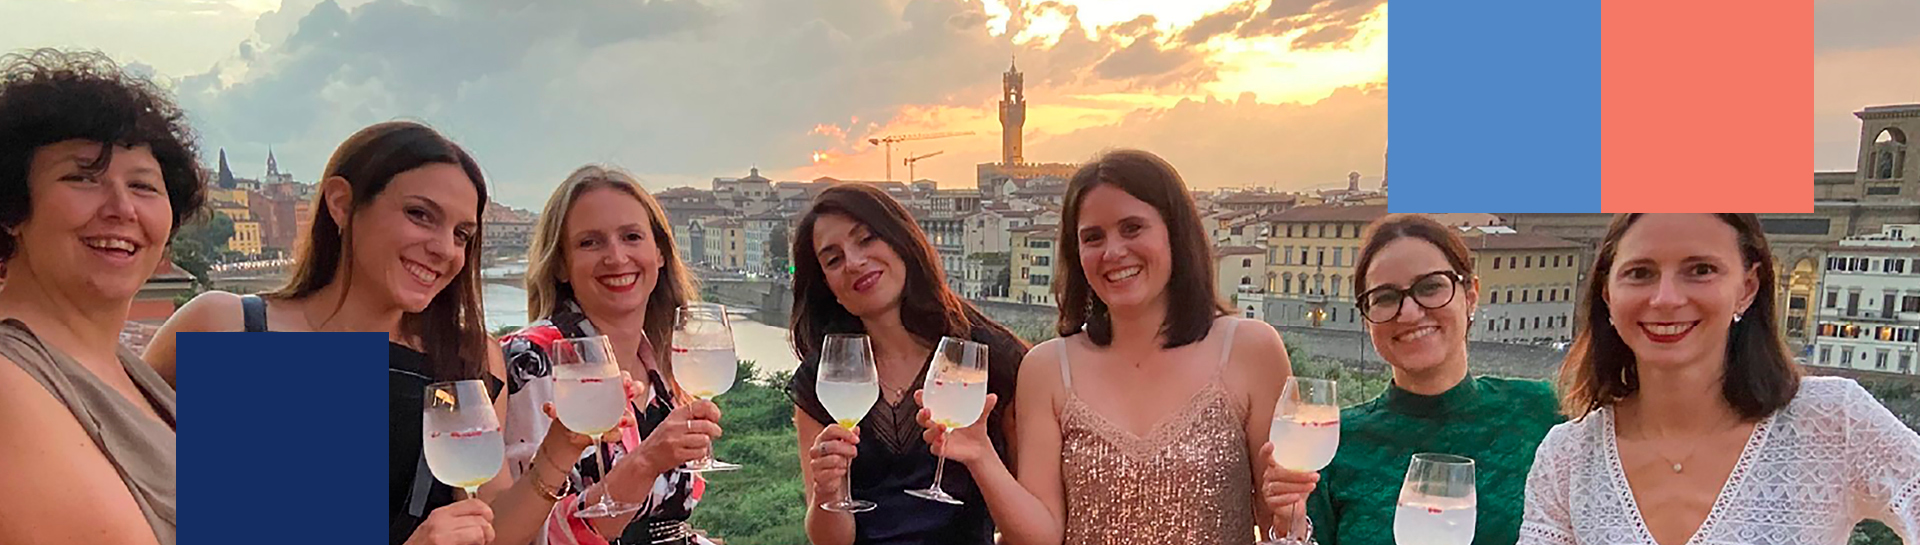 Gruppe von Frauen mit einem Glas Wein in Florenz - mobile